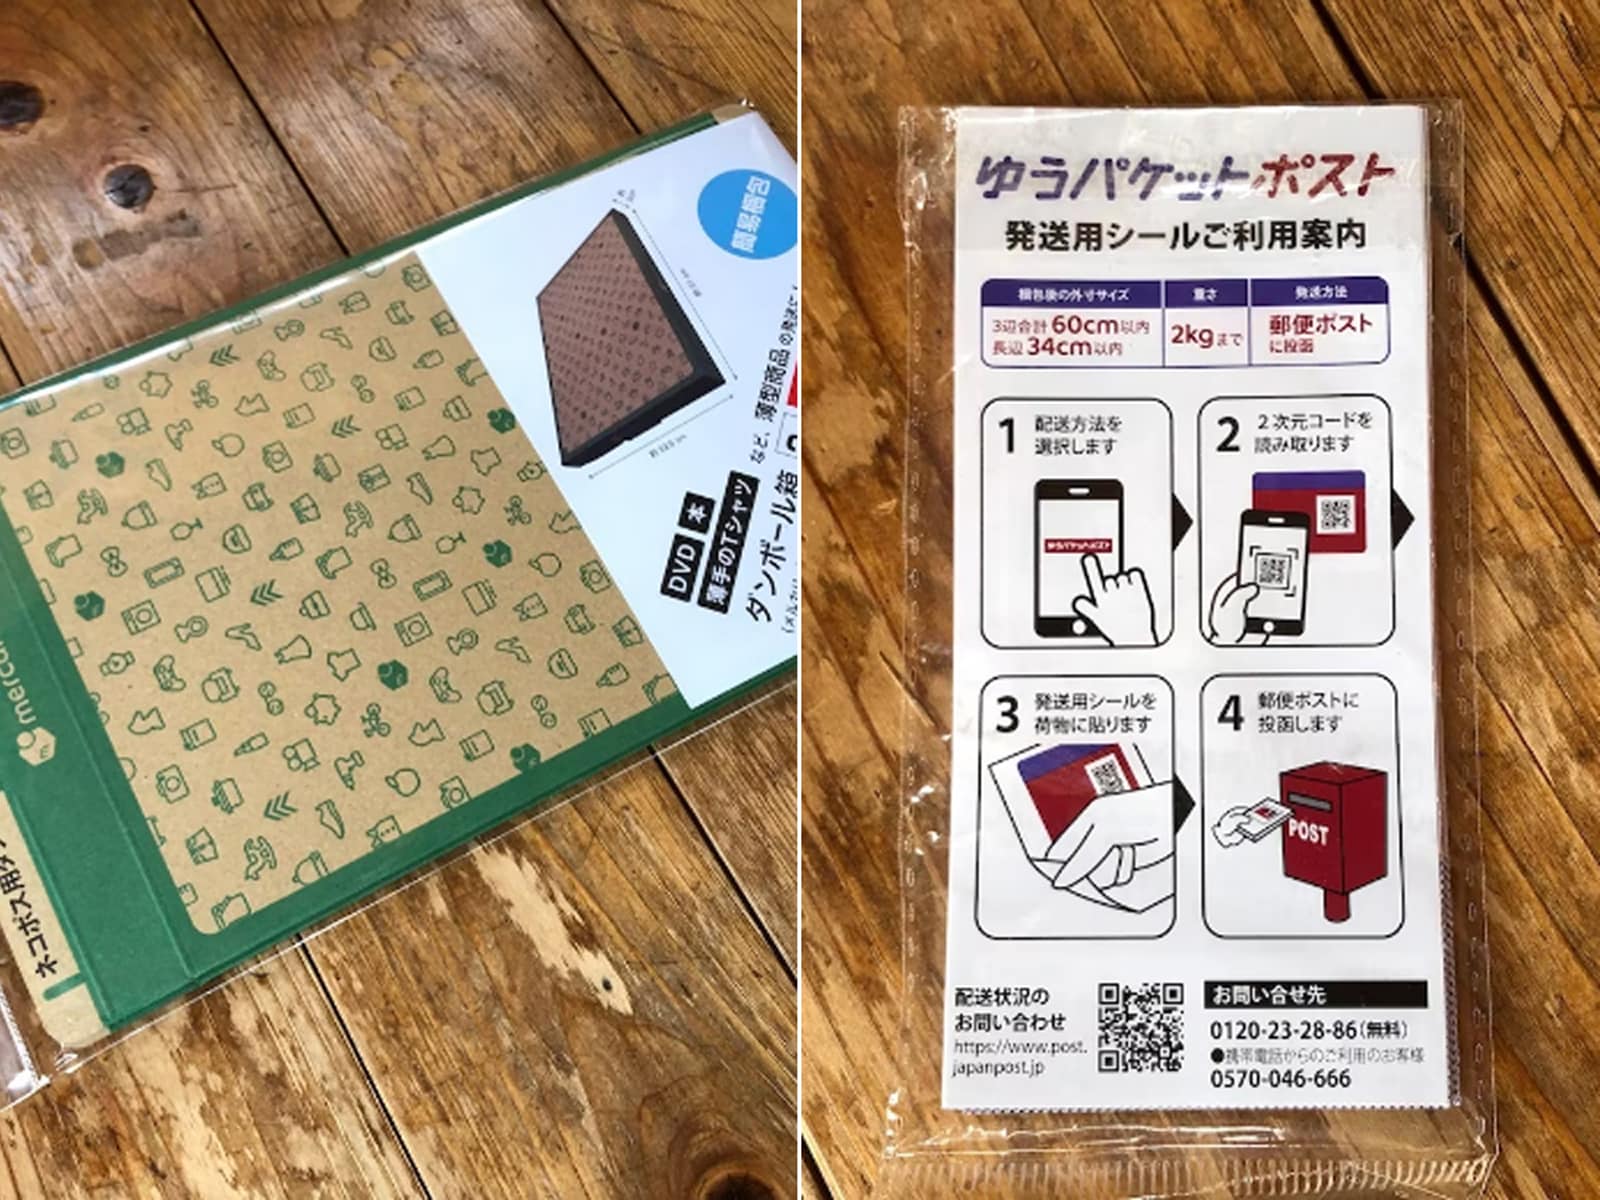 ヤマト運輸と日本郵政が協業、メルカリでよく使う「ネコポス」と「ゆうパケット」はどうなる？